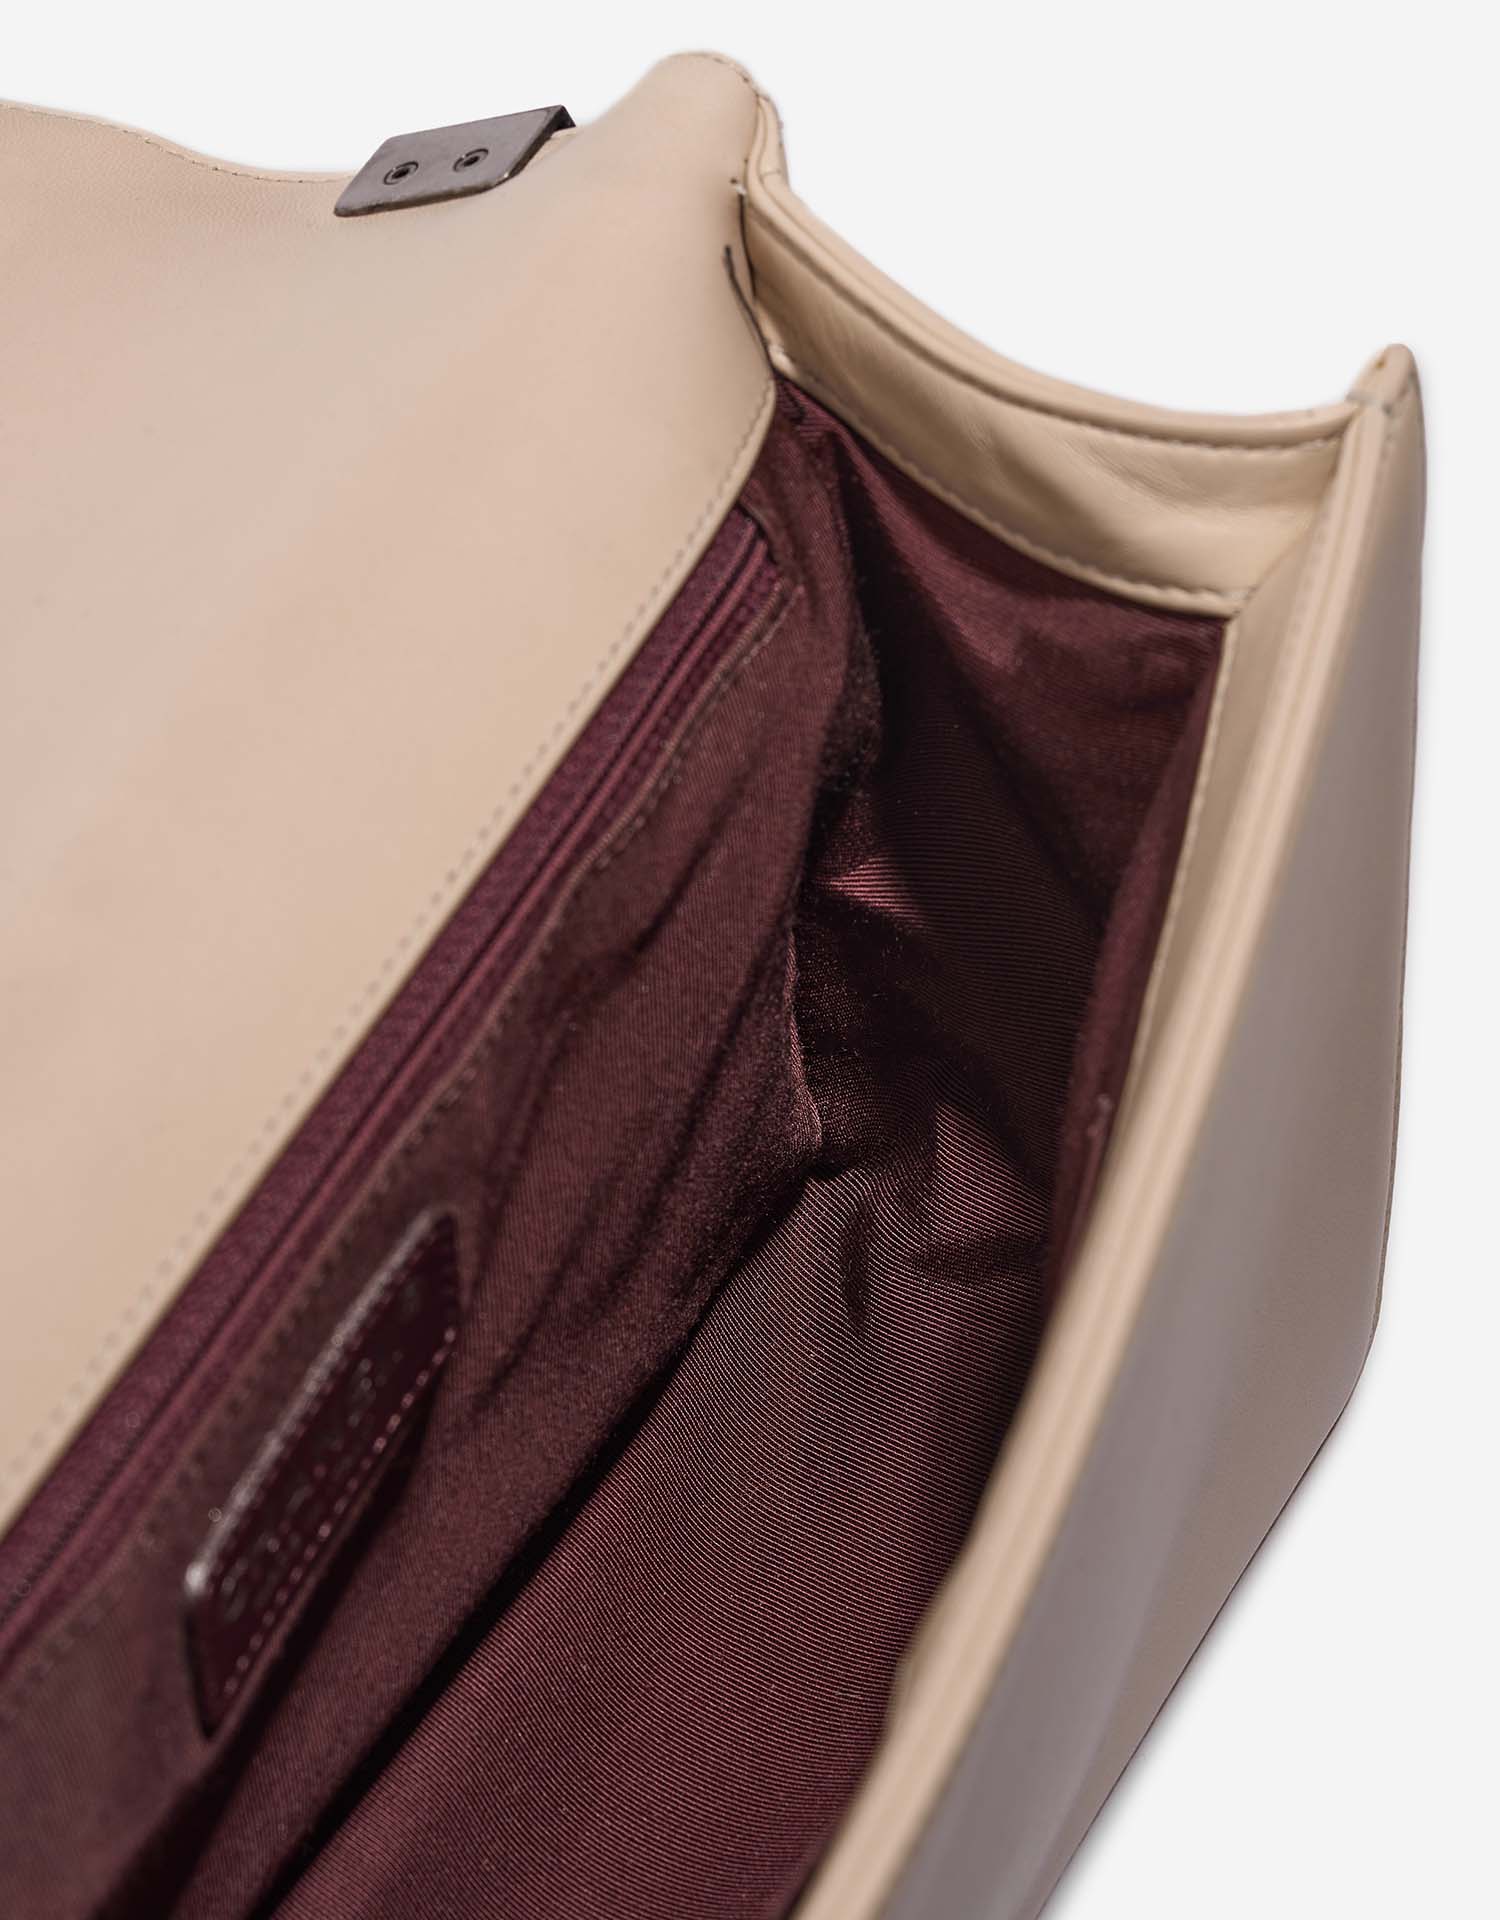 Chanel Boy NewMedium Beige Inside  | Sell your designer bag on Saclab.com